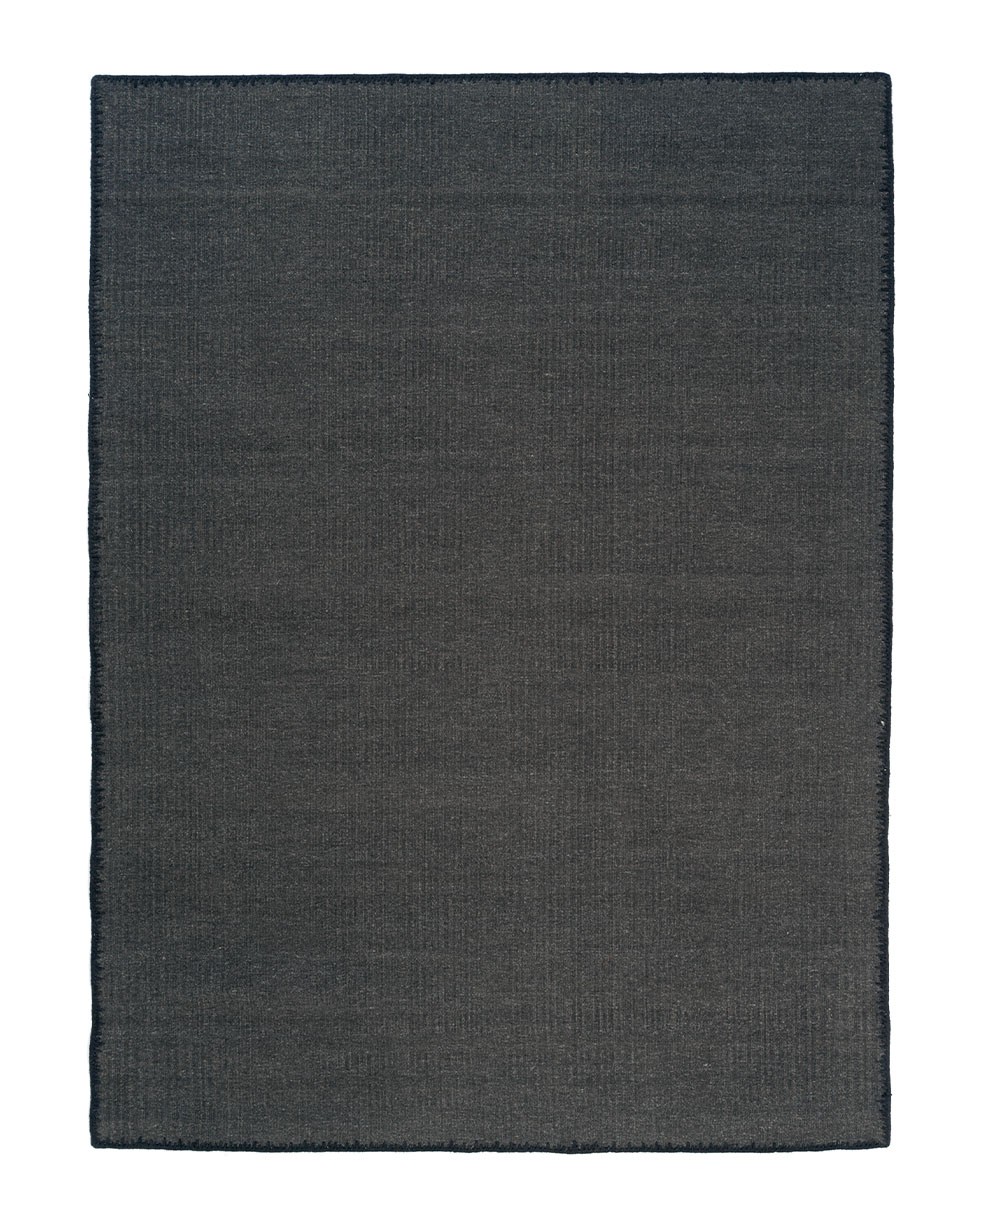 Hier abgebildet ein Produktbild von dem Teppich Tenere von der Élitis Kollektion 2024 - RAUM concept store